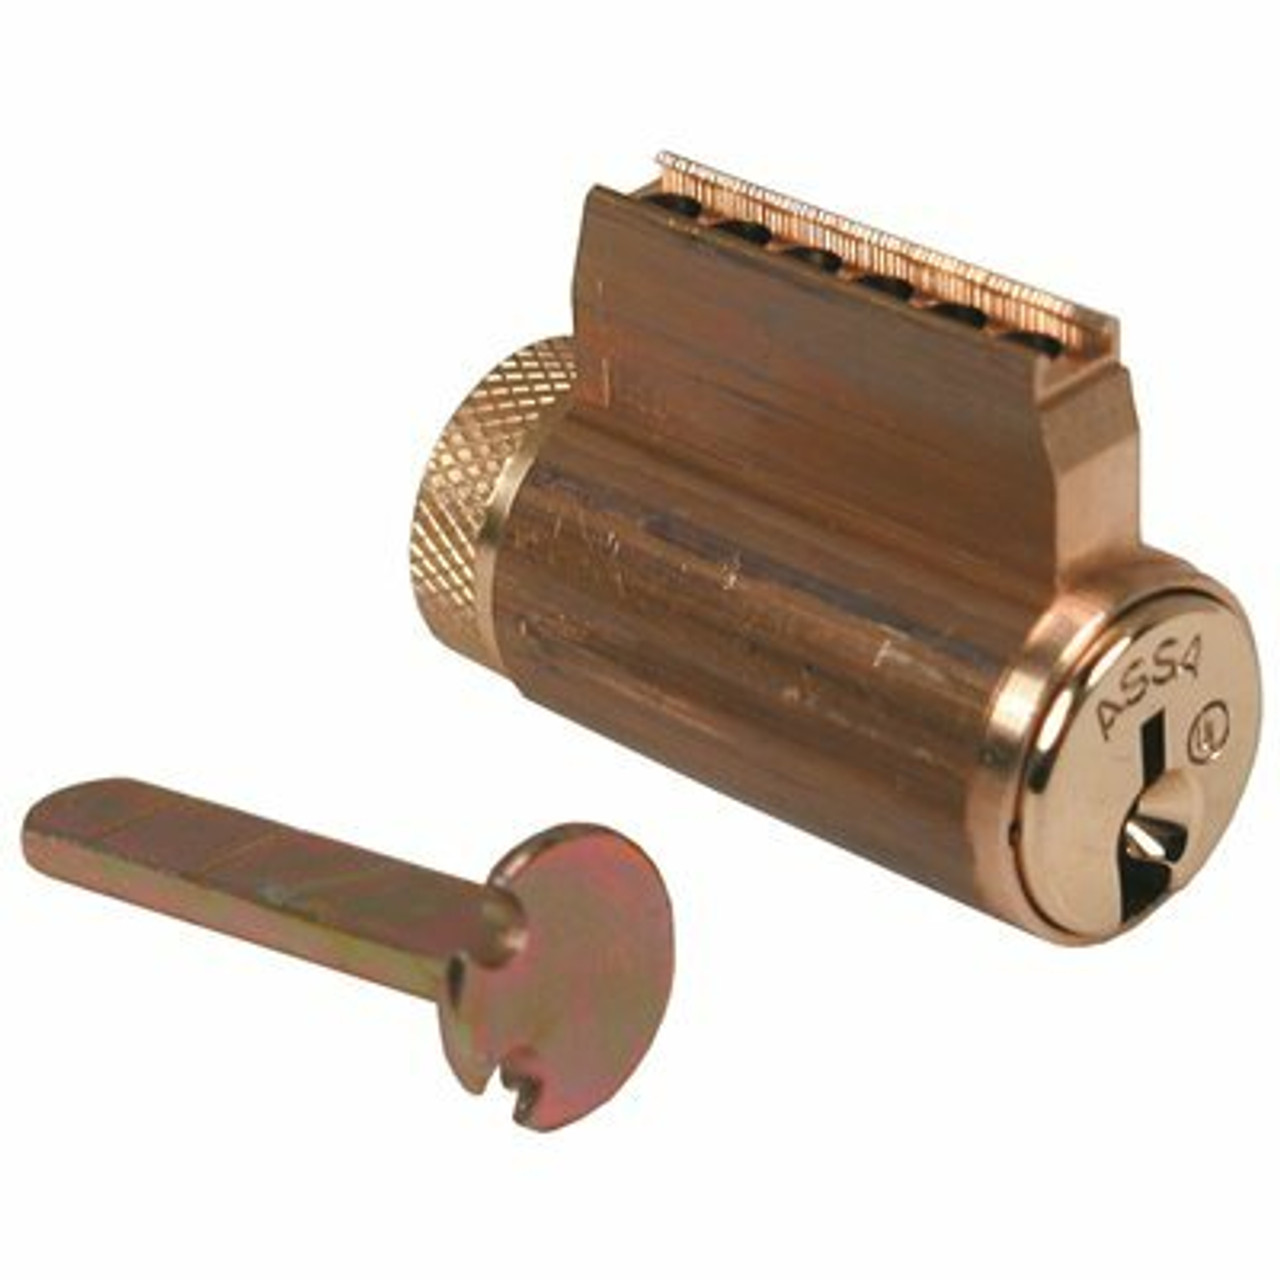 Assa High Security Locks Assa High Security Schlage Key-In-Knob Cylinder V-10 Brass